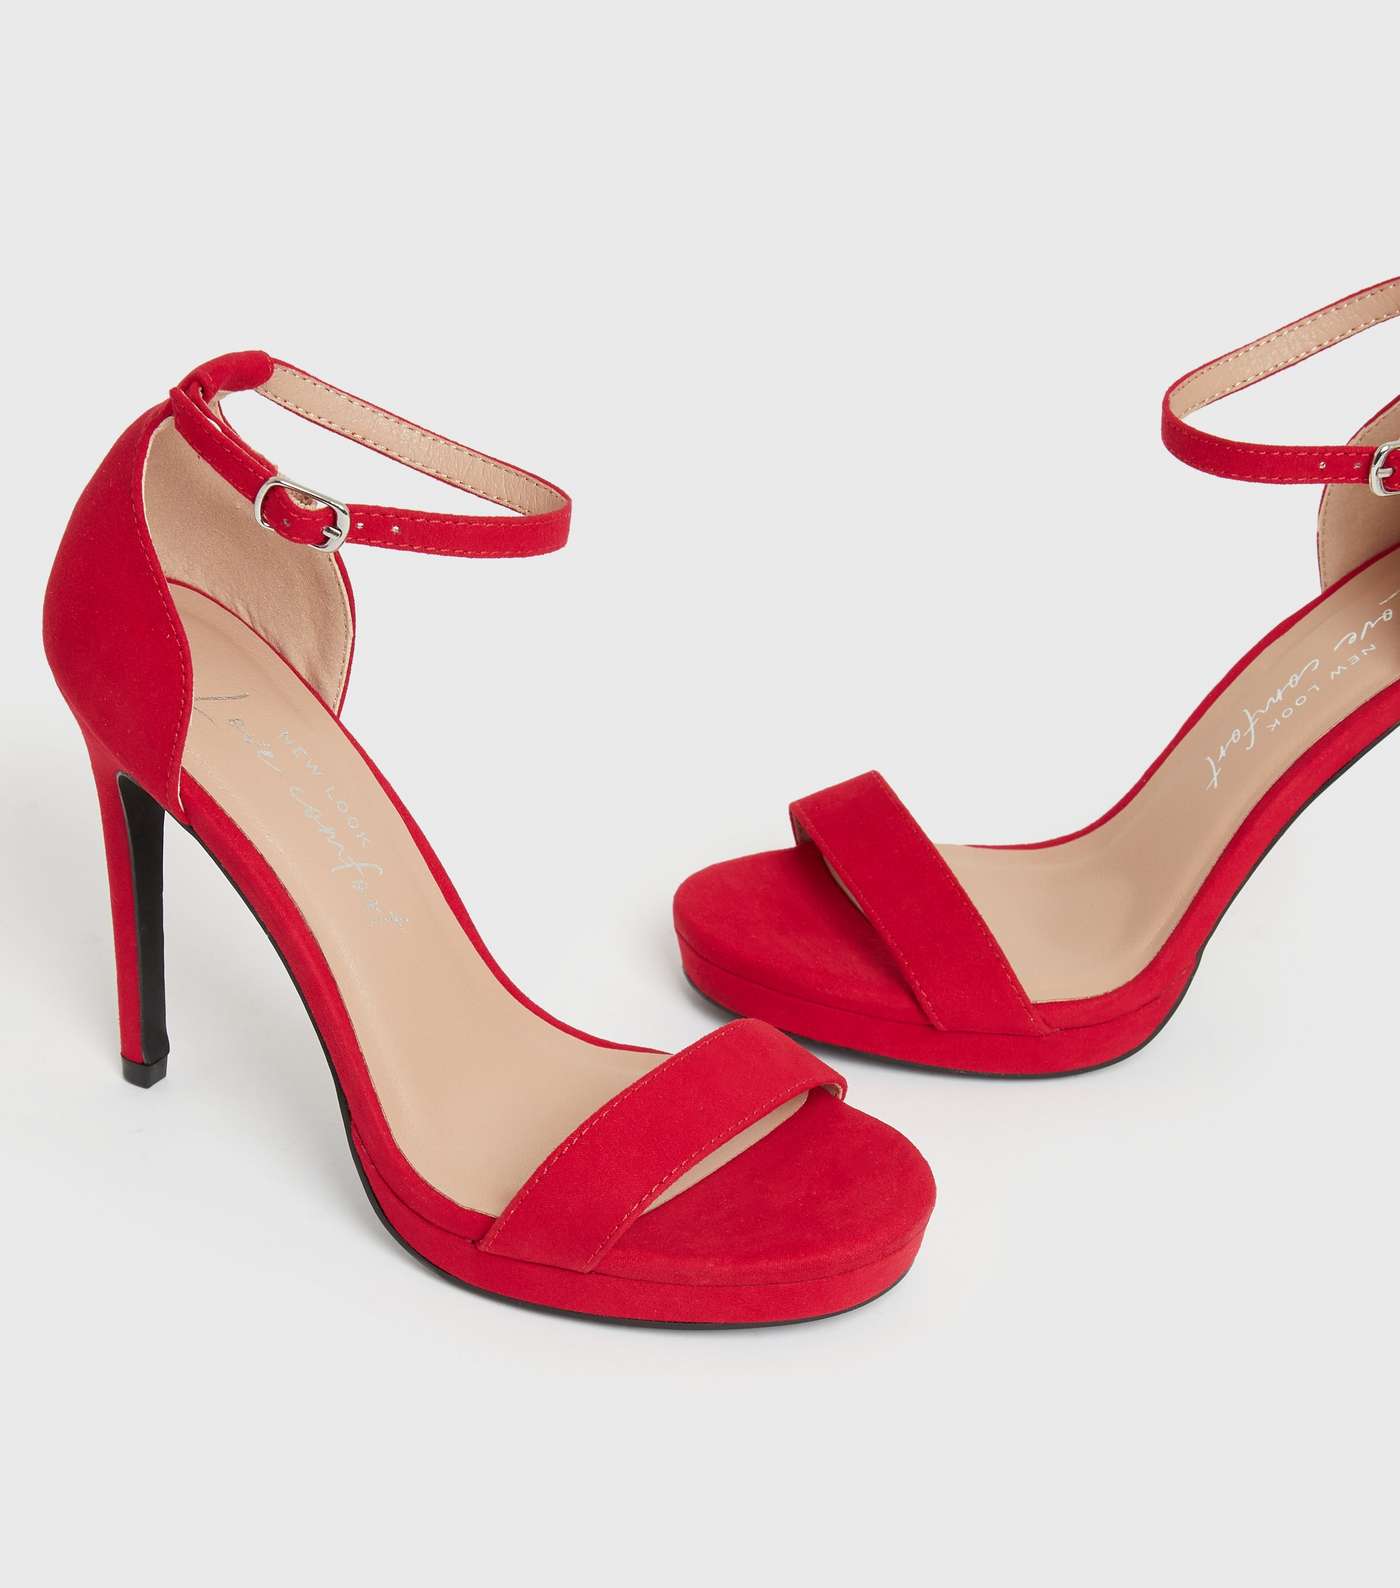 Red Suedette Platform Stiletto Heel Sandals Image 3